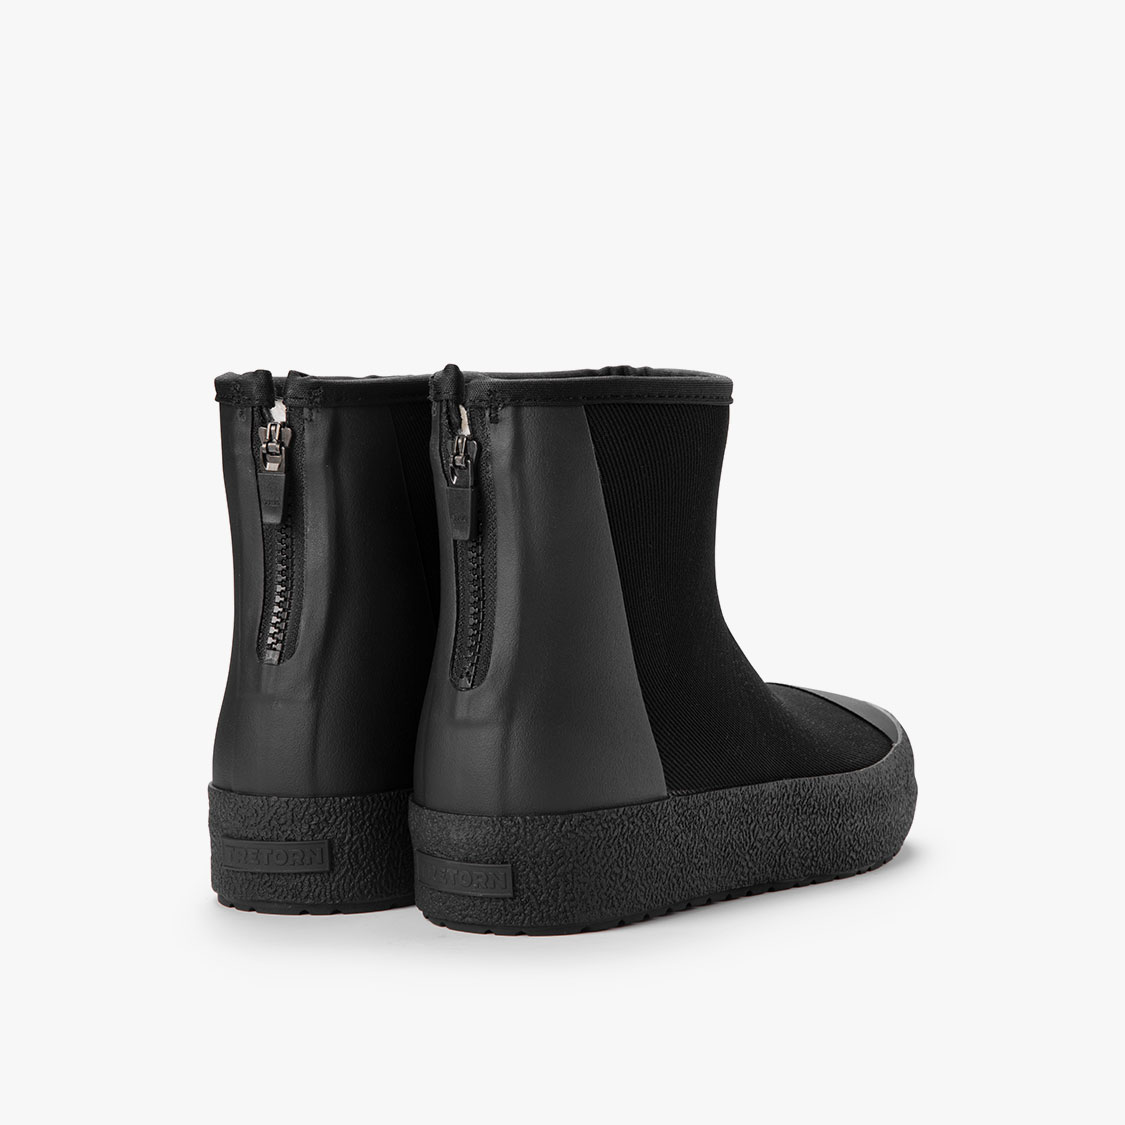 tretorn winter boots schwarz schweiz kaufen